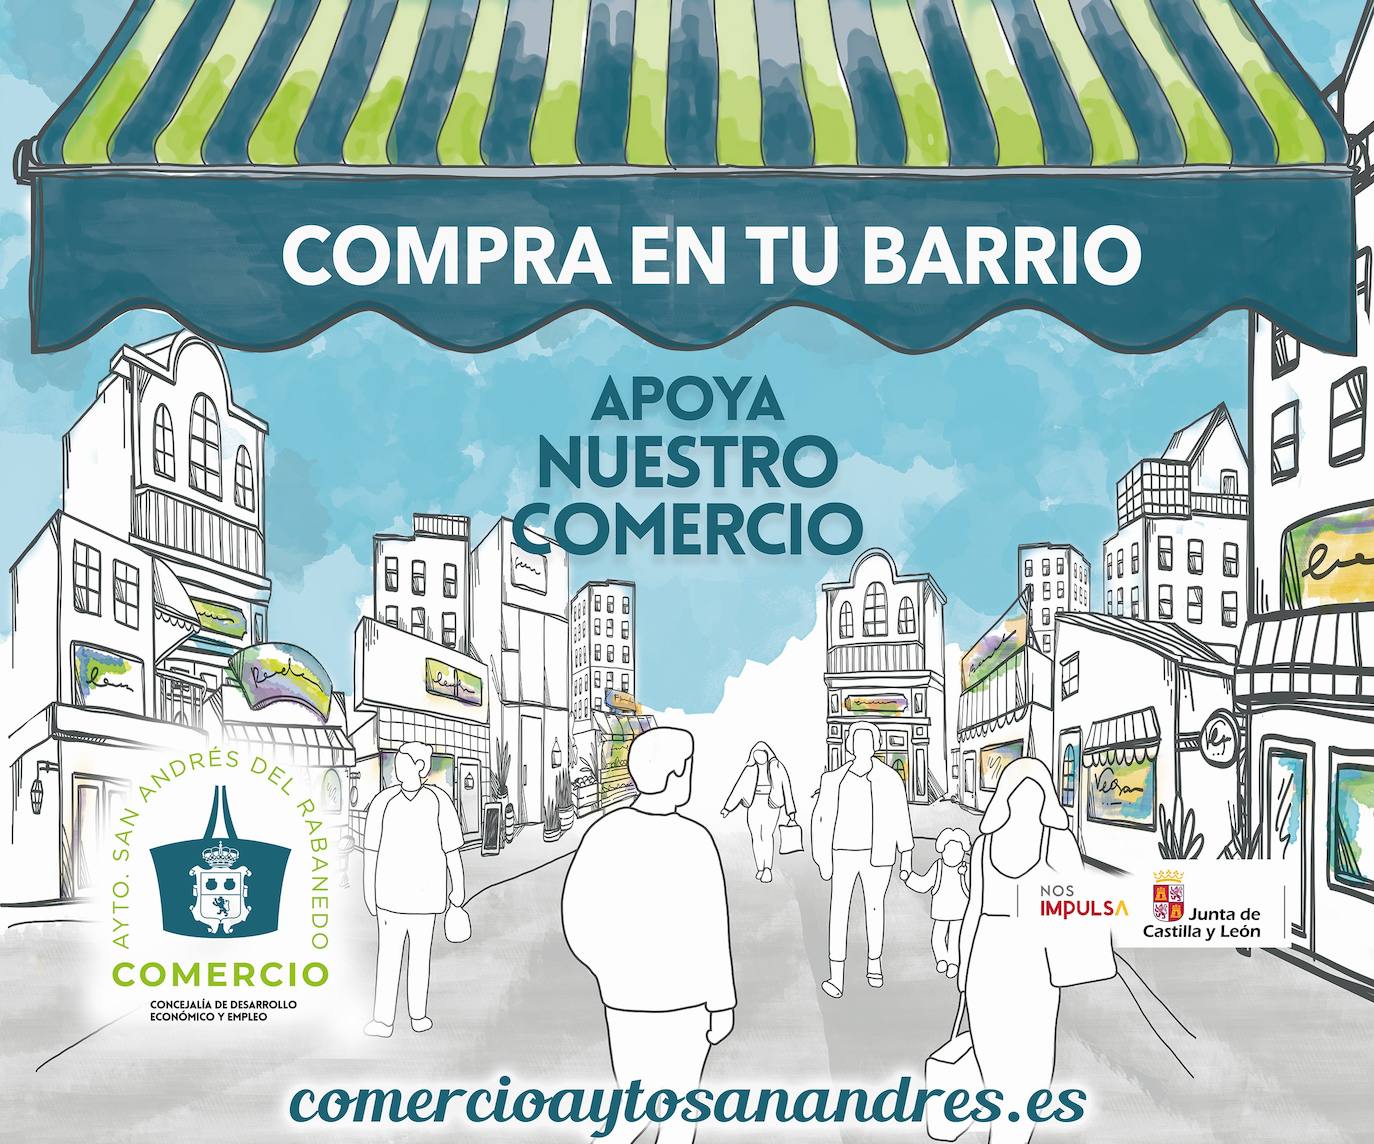 El Ayuntamiento de San Andrés inicia una nueva campaña de concienciación y difusión de los negocios del municipio./